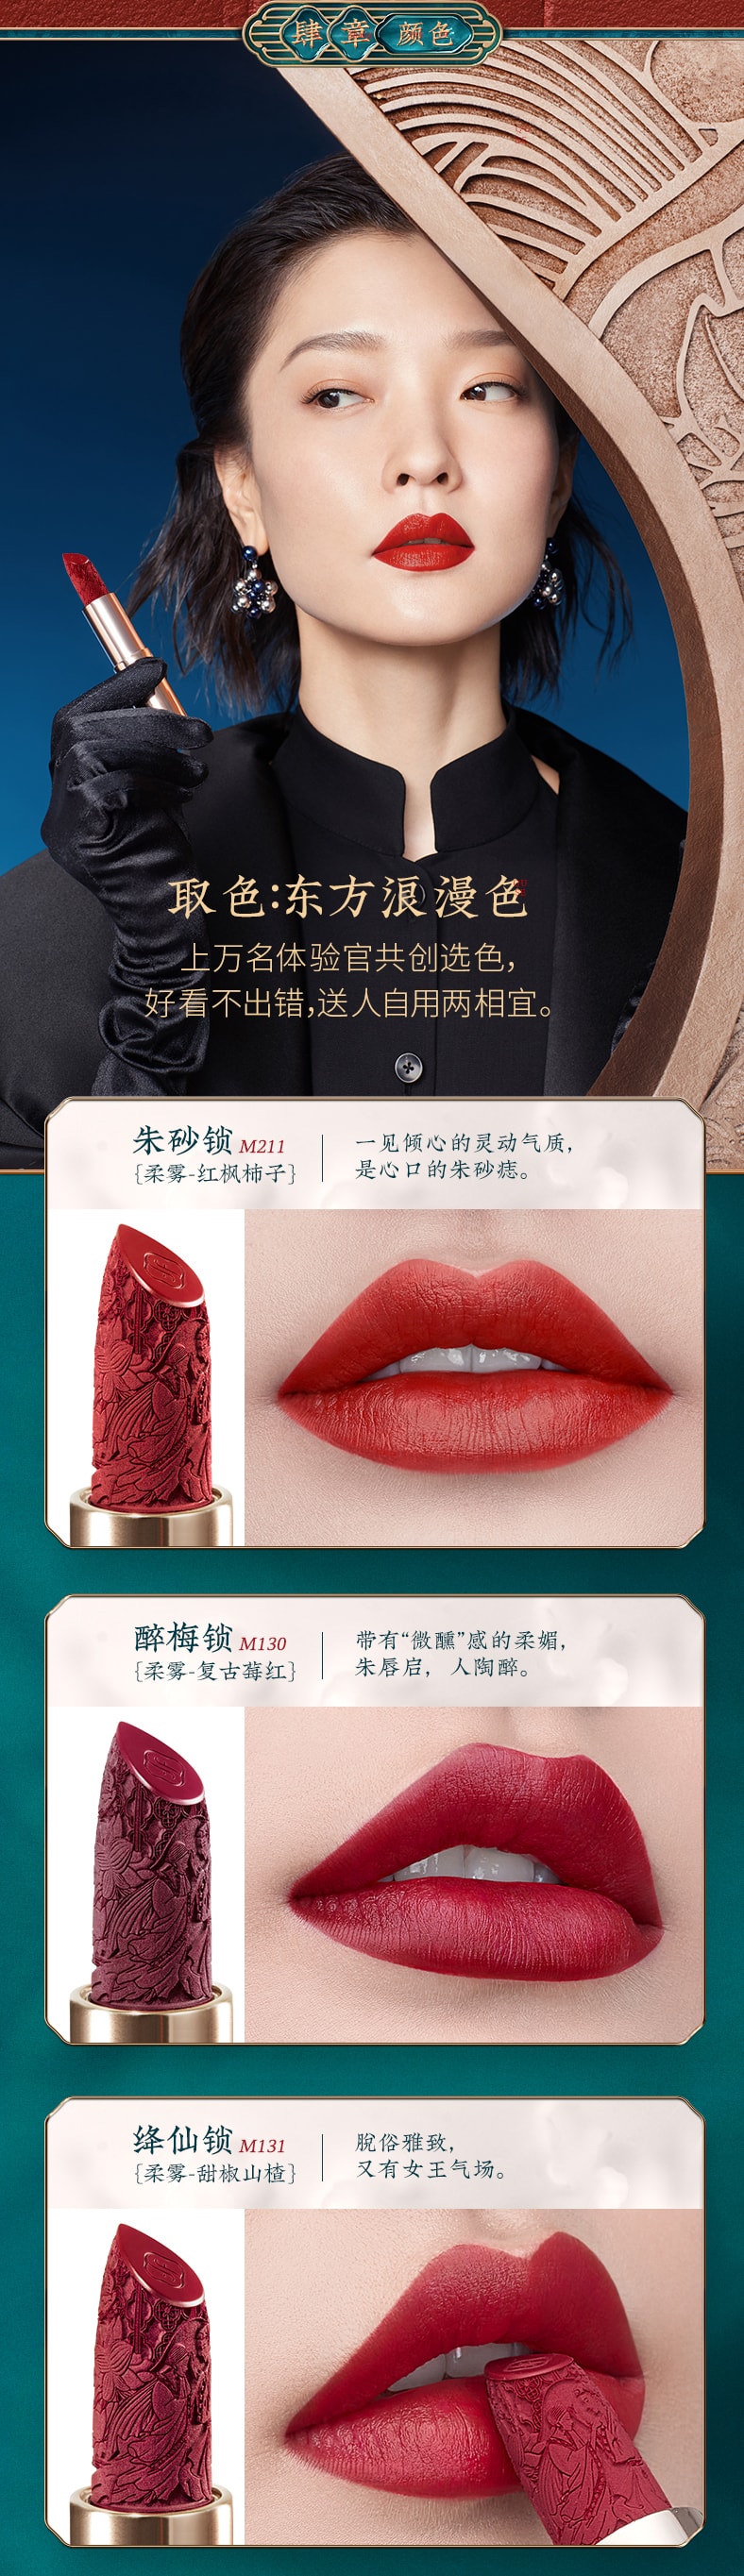 [China Direct Mail] Huaxizi Concentric Lock Lipstick China Style M131 Jiangxian Lock (Sweet Pepper Hawthorn)